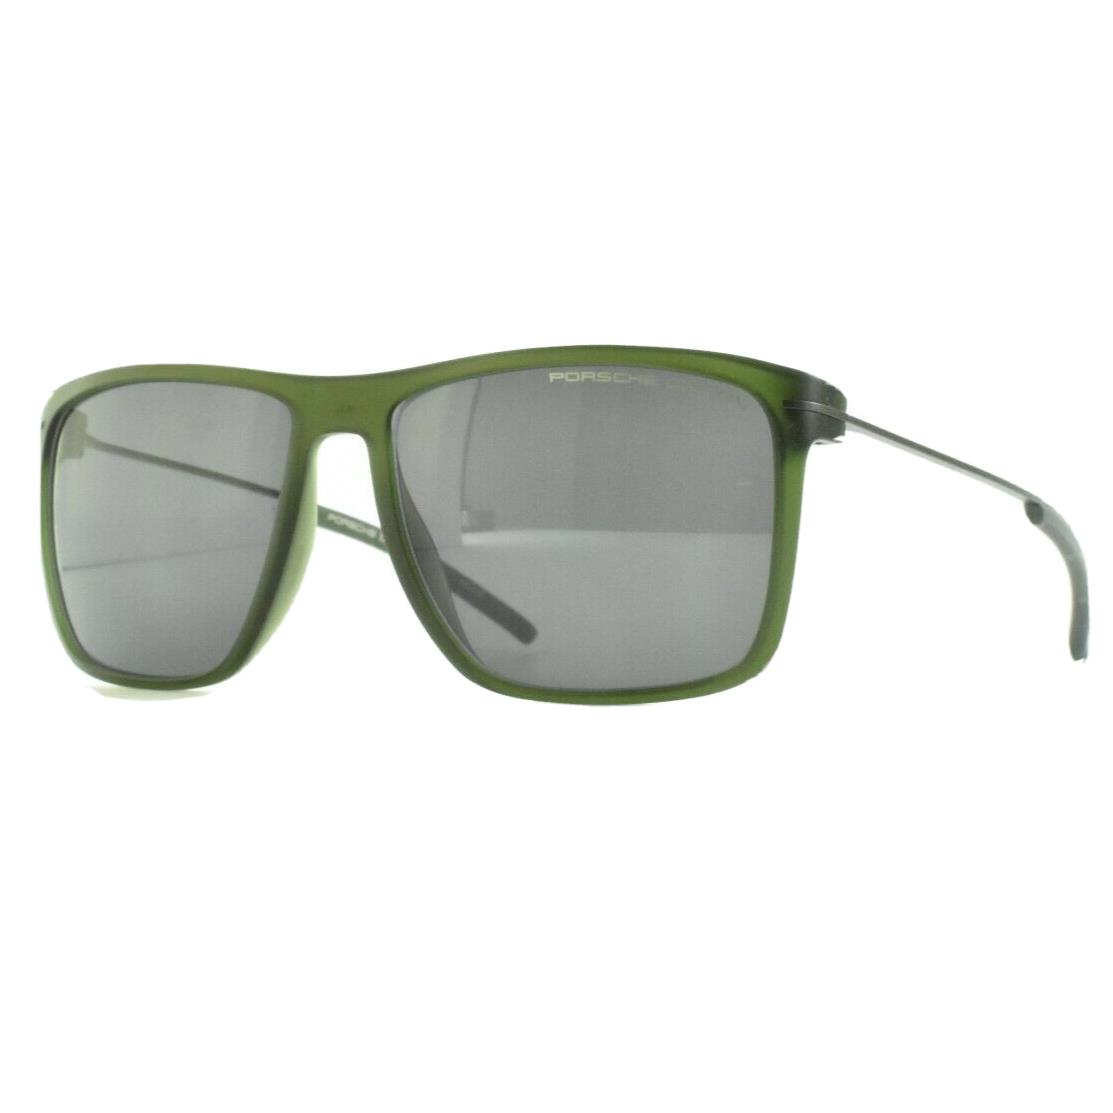 Porsche 8636 C Full Rim Mens Green Square Sunglasses